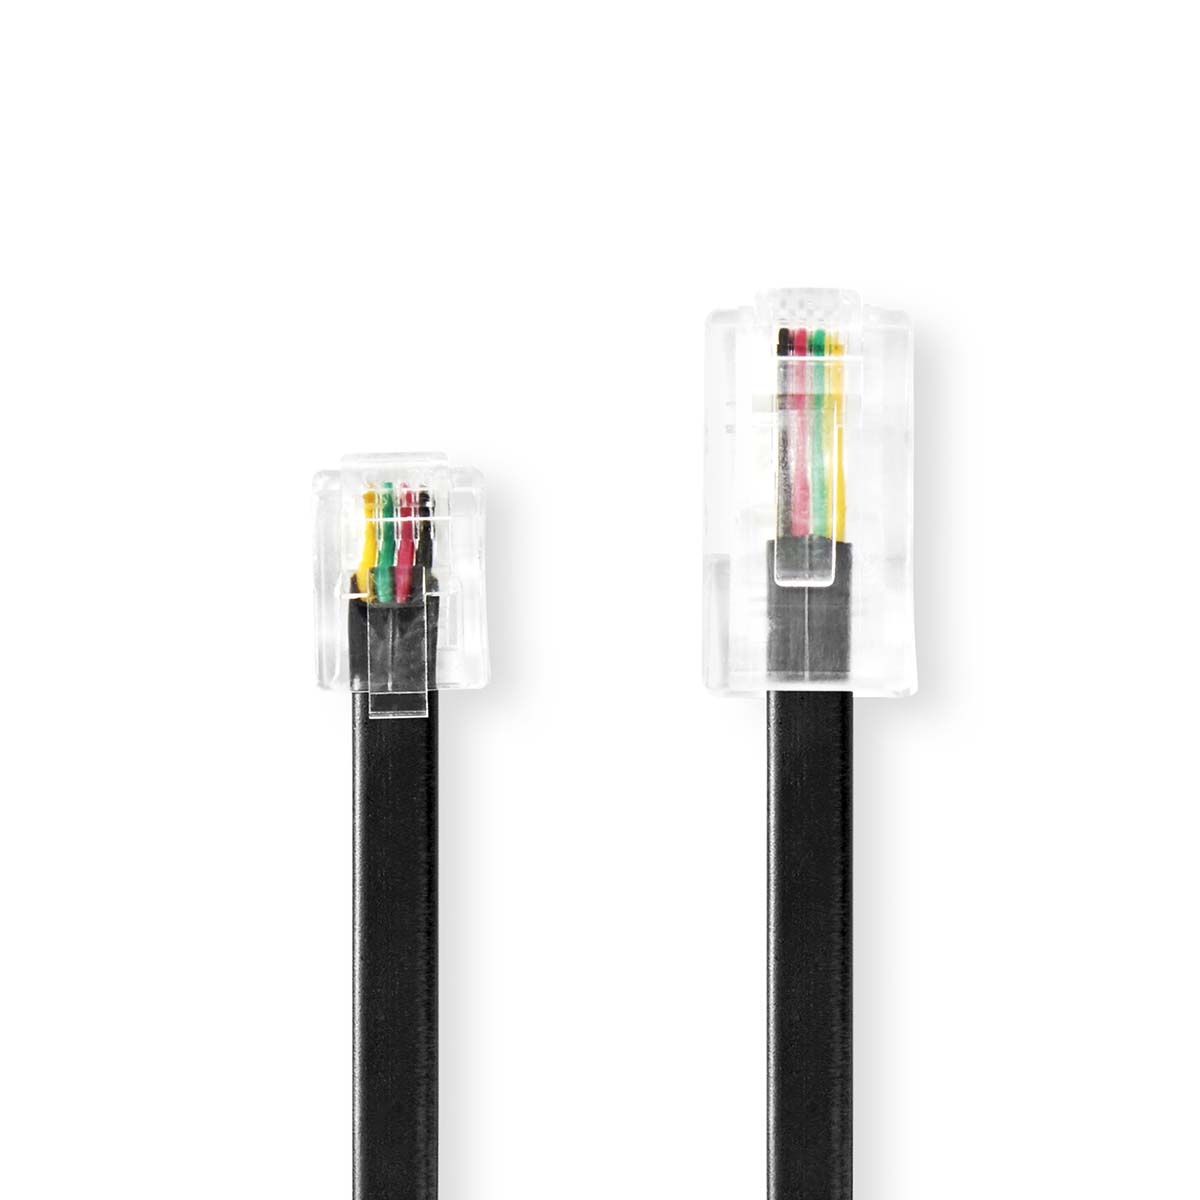 Black Male 10.0 m 6P4C Cable type: RJ11 Female Nedis TCGP90205BK100 Telecom Extension Cable RJ11 Cable design: Flat 6P4C RJ11 